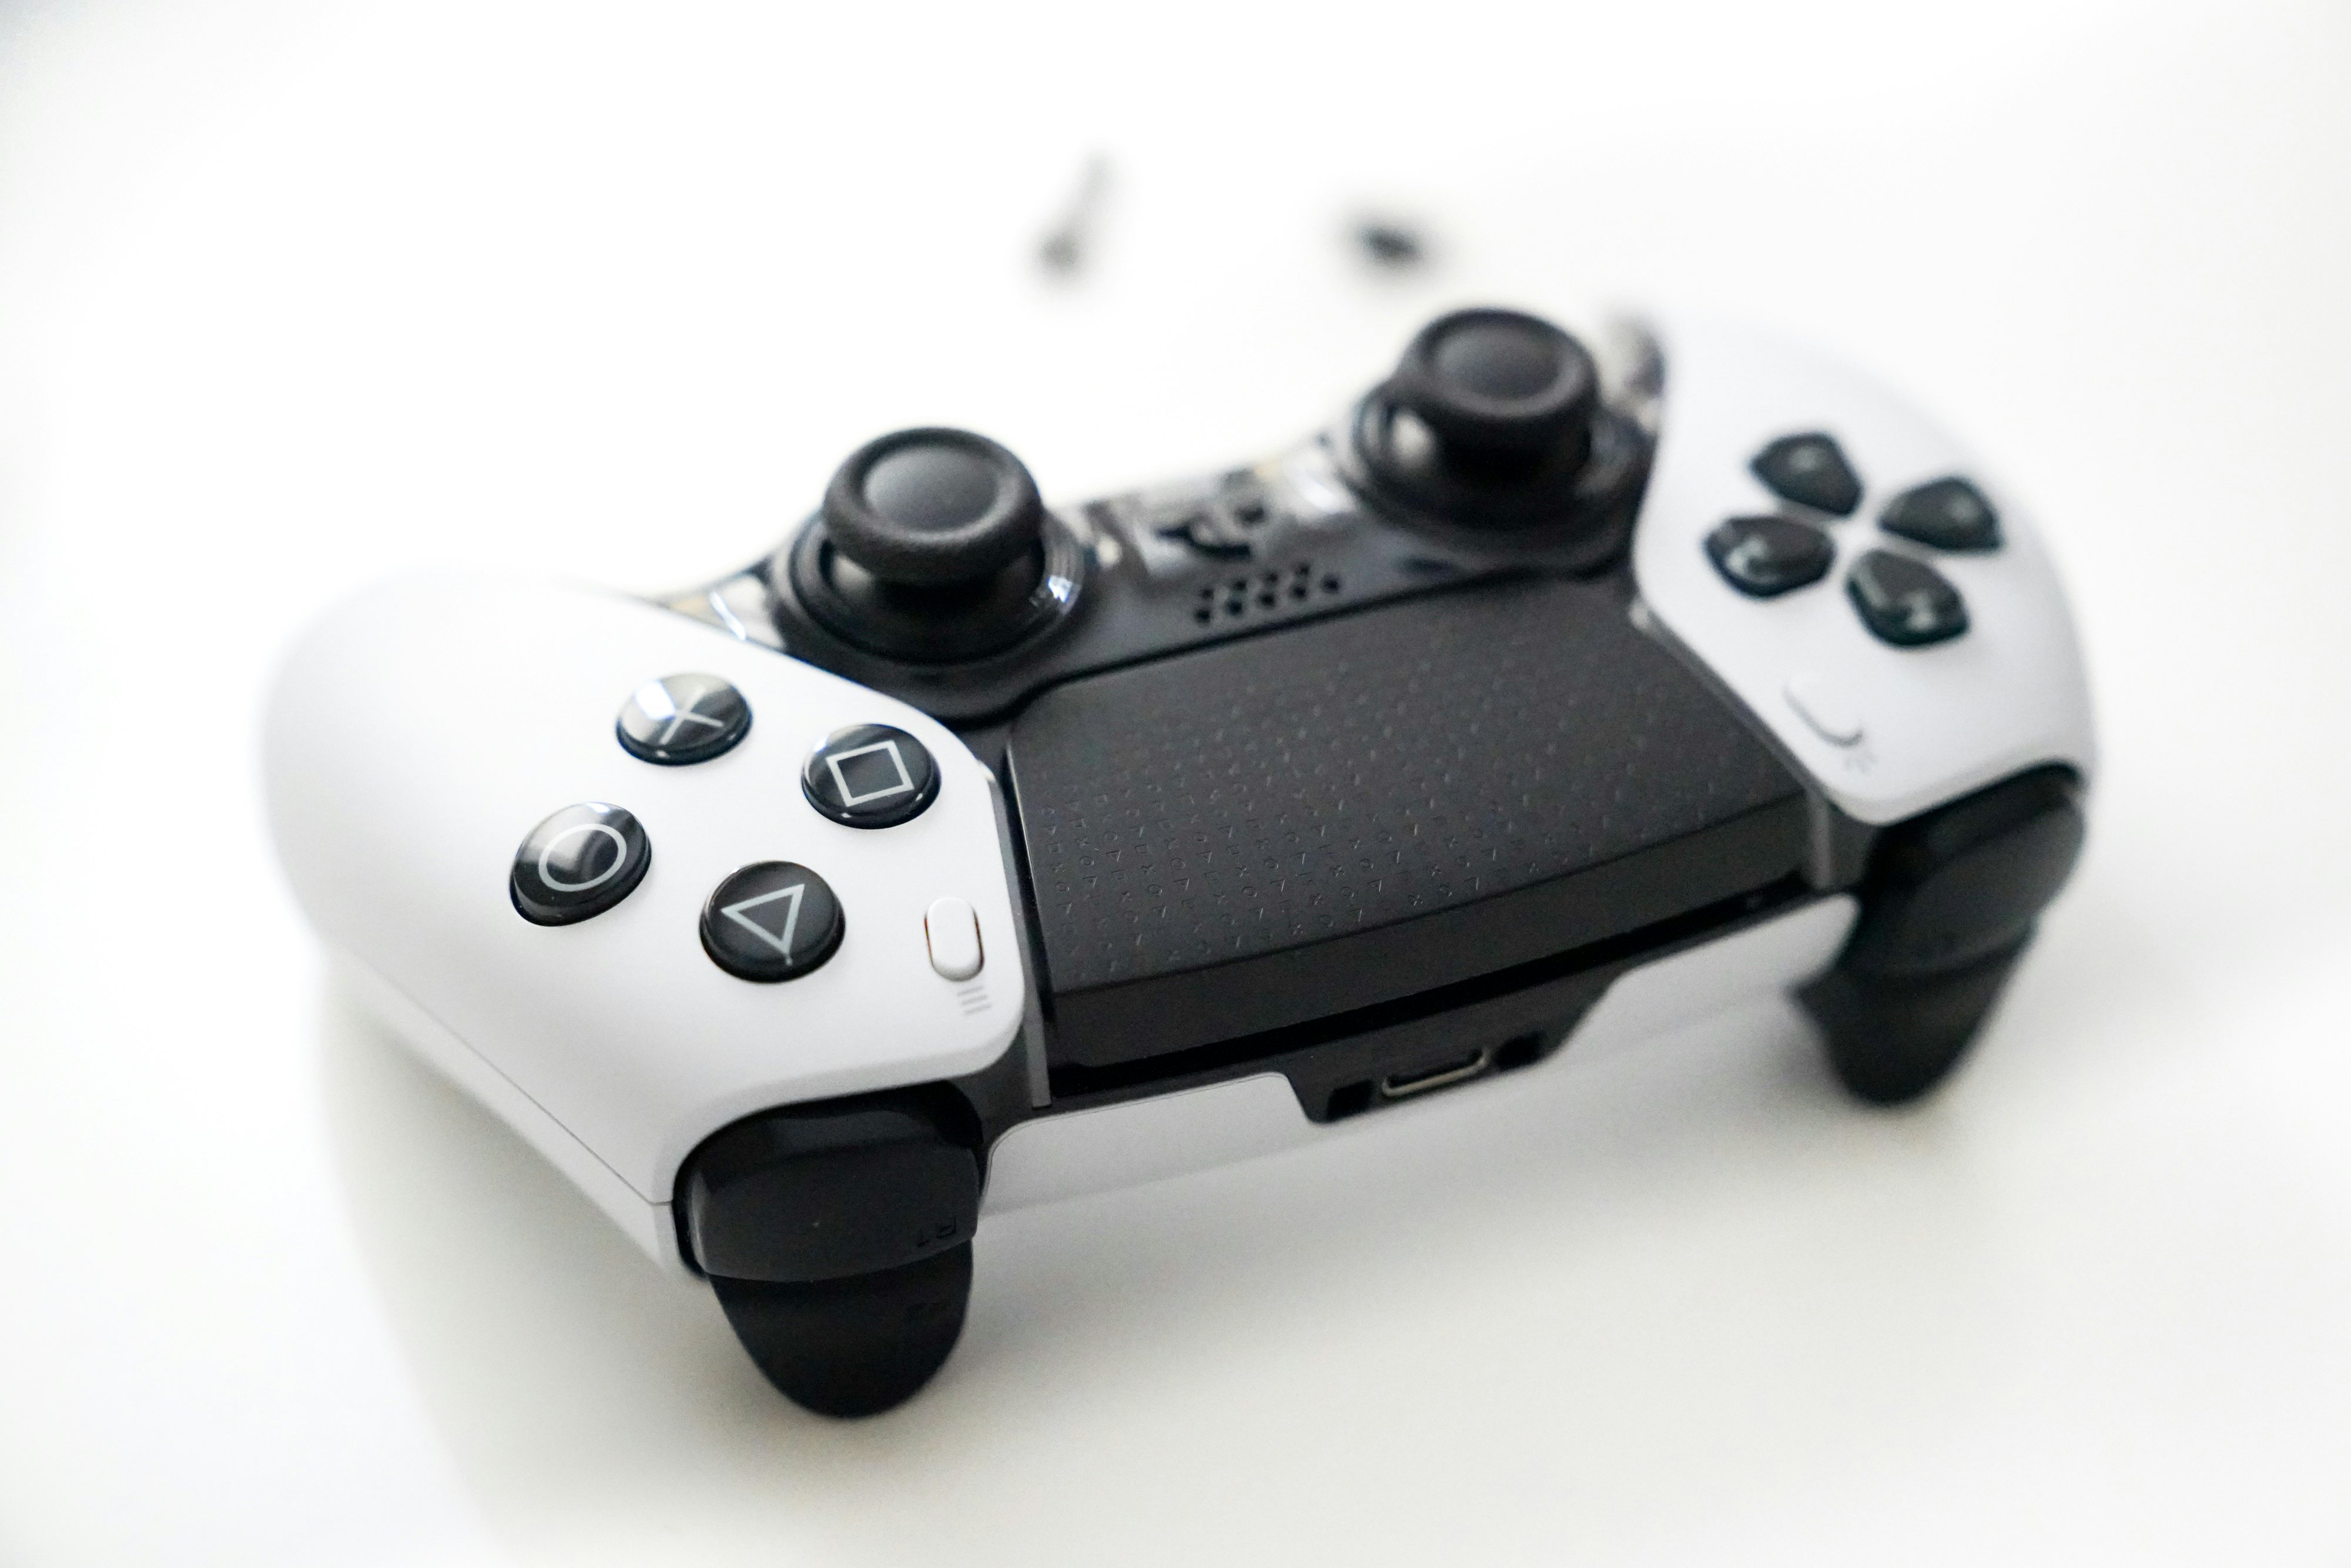 PS5 DualSense Edge Controller Review